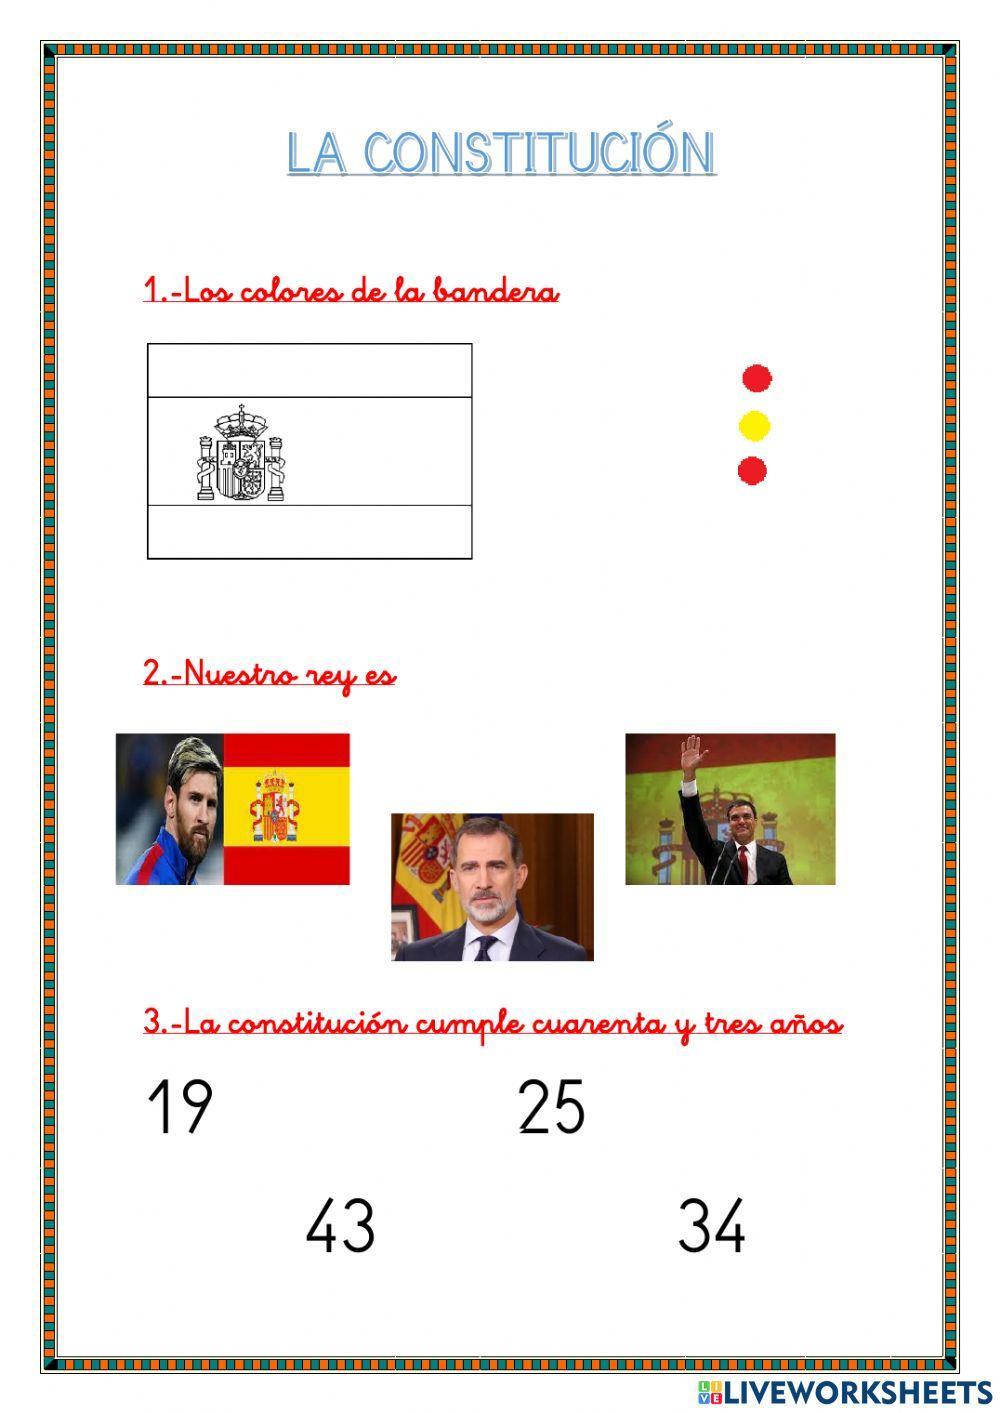 La constitución española de 1978